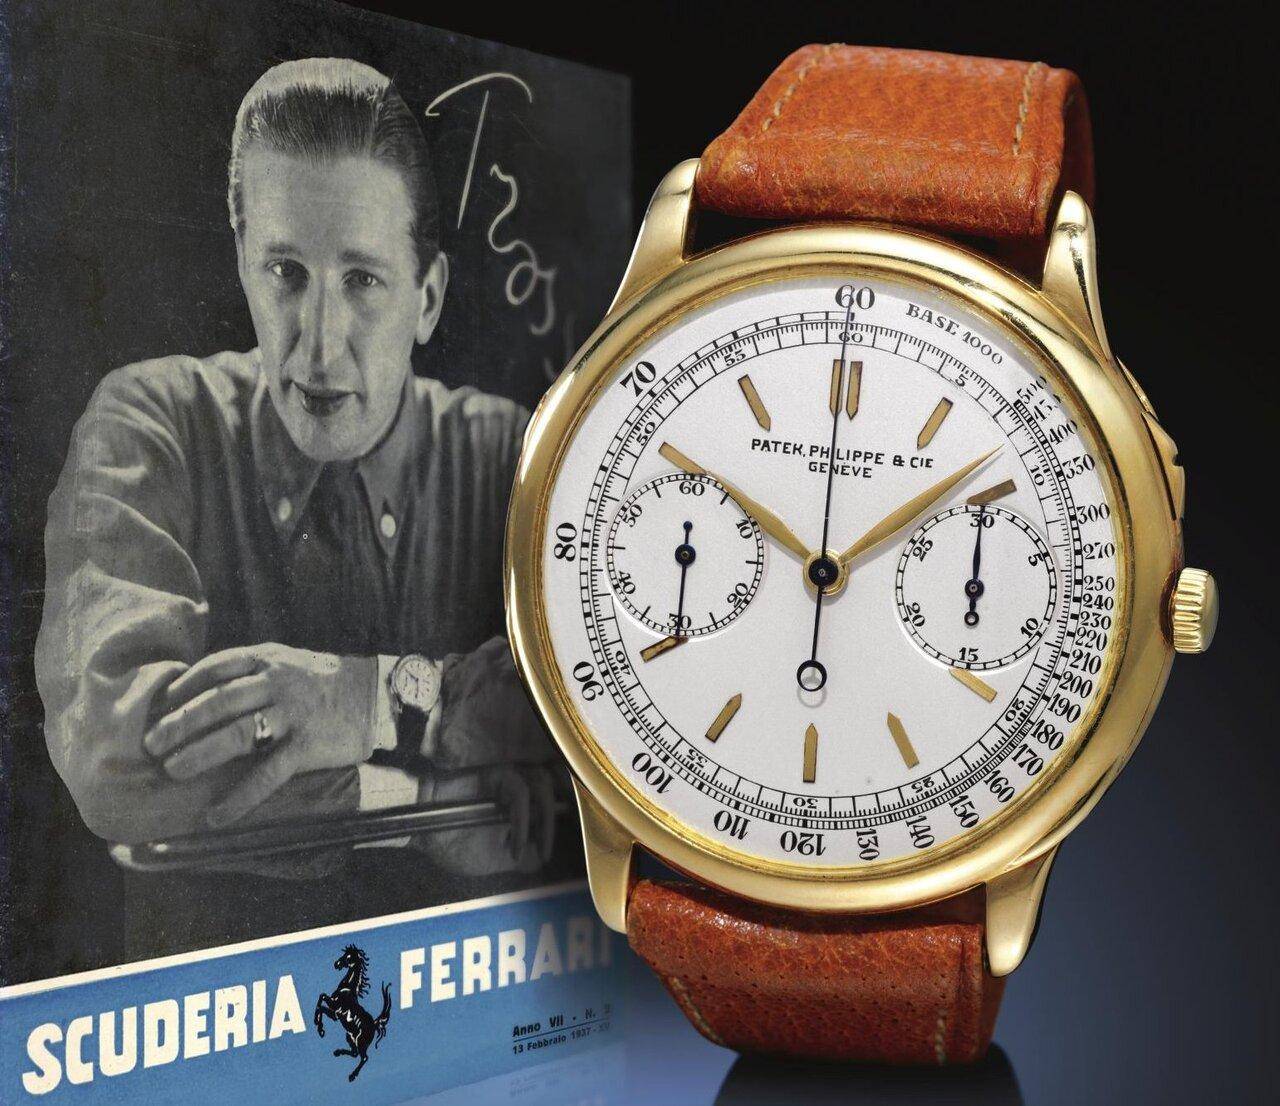 El Trossi Leggenda junto con un artículo de la revista Scuderia Ferrari de 1937 de 1937, cort...jpeg